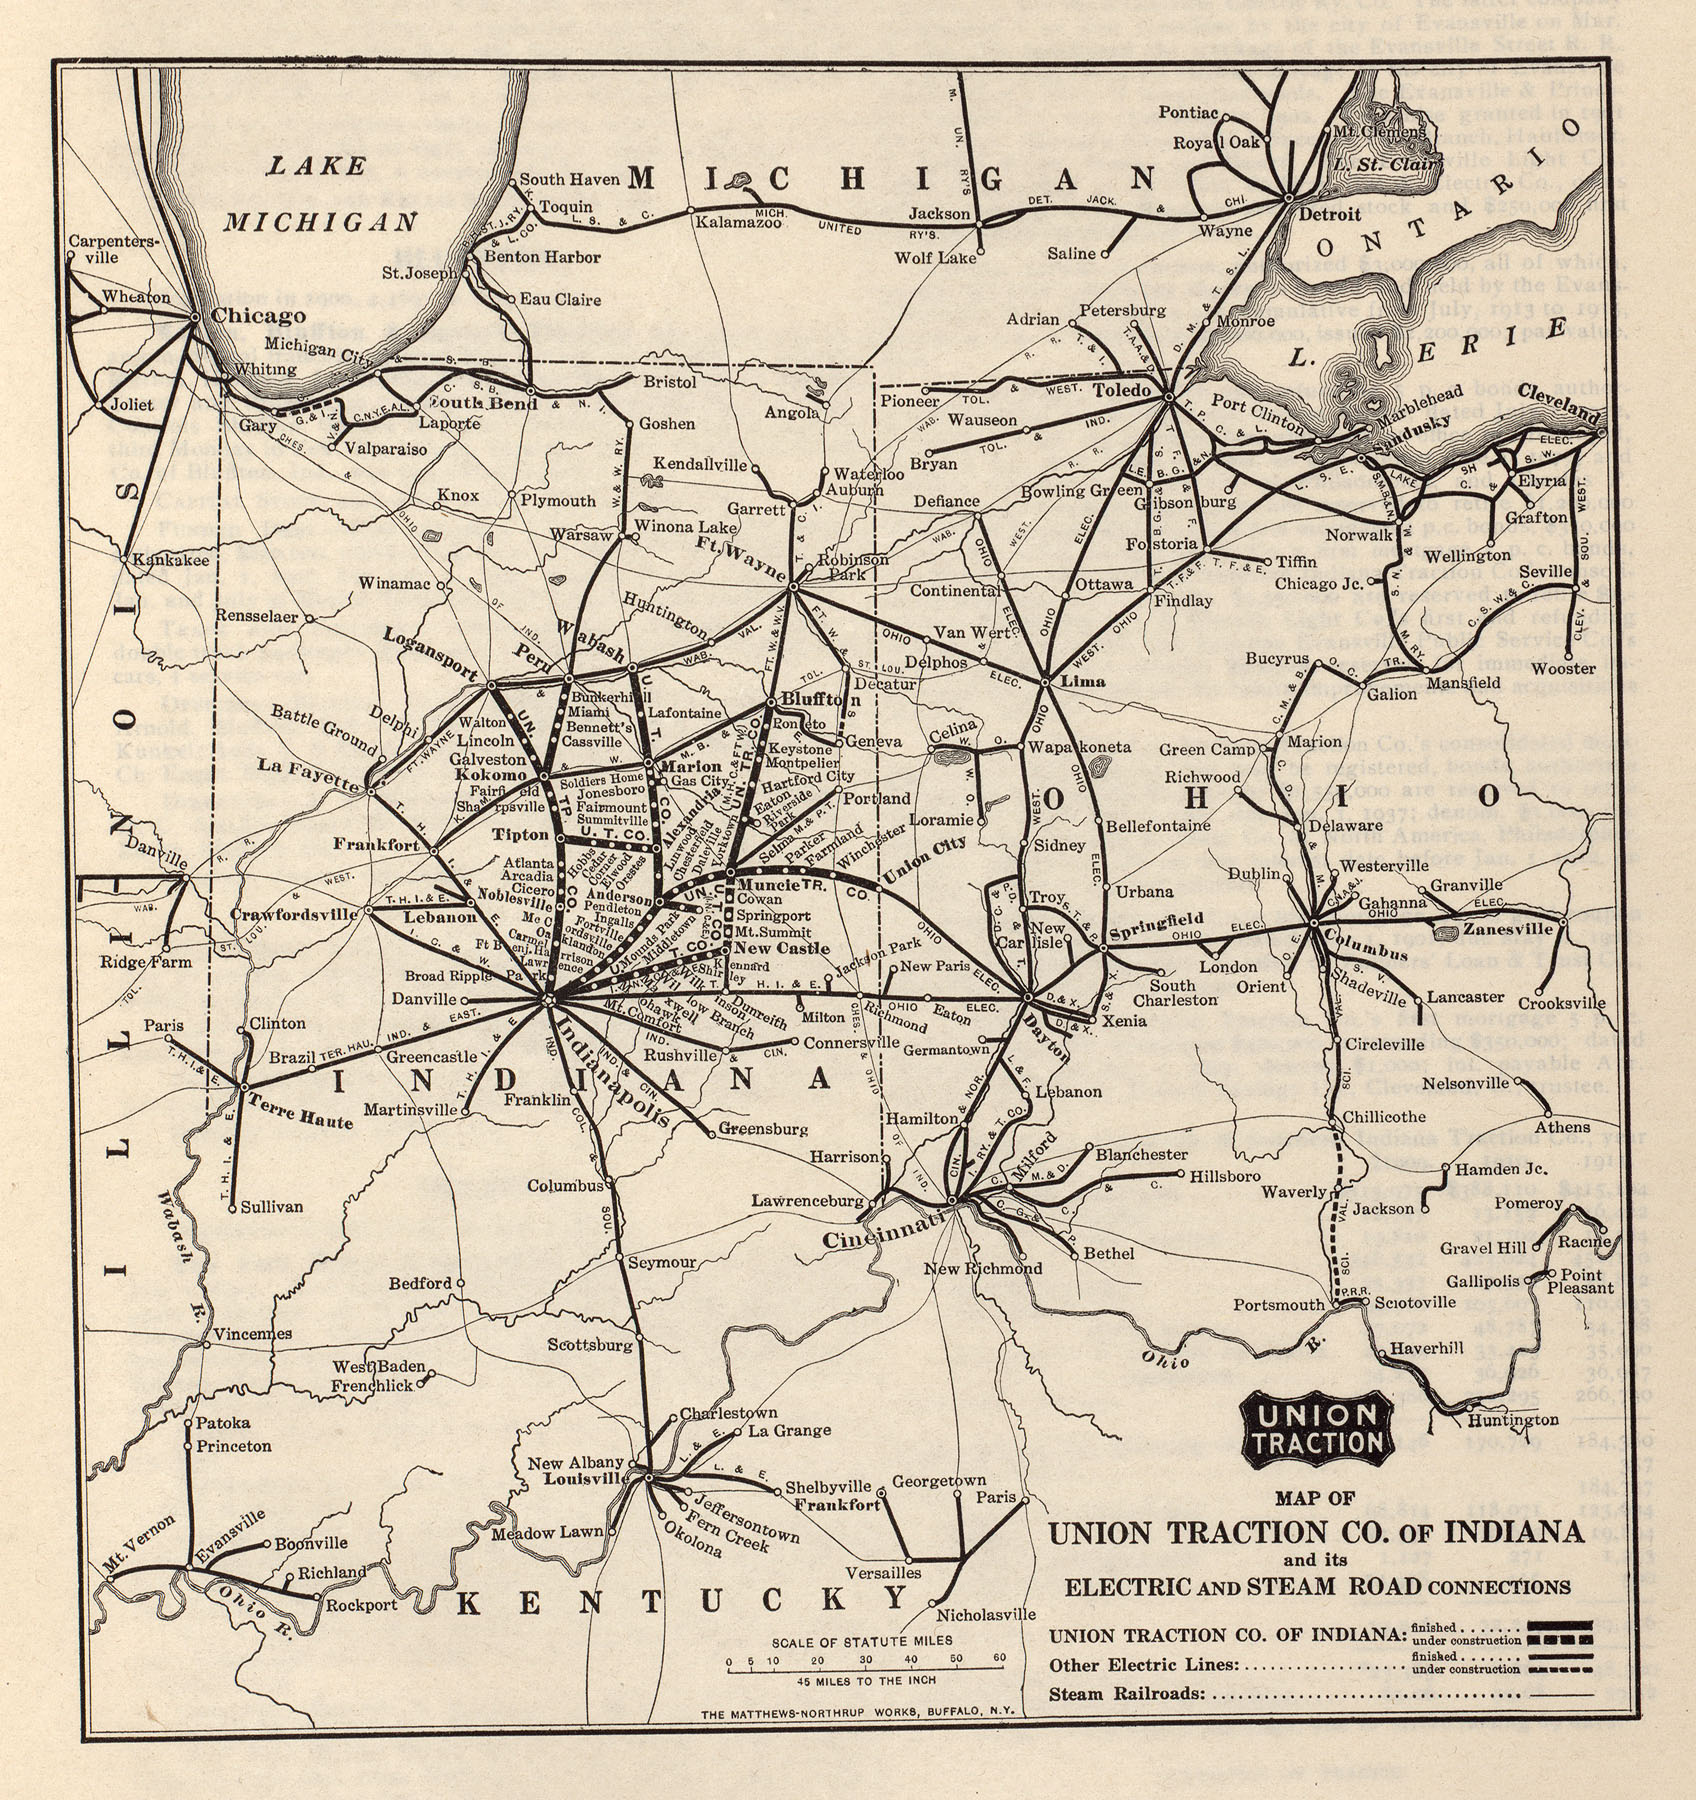 底特律 — Maps; 路易維爾 — Maps; Toledo — Maps; Evansville — Maps; South Bend — Maps; Gary — Maps; Interstate Public Service — Maps; Pomeroy — Maps; 代頓 — Maps and Plans; 芝加哥 — Maps and Plans; 克里夫兰 — Maps and Plans; 辛辛那提 — Maps and Plans; Columbus, OH — Maps and Plans; 印第安納波利斯 — Maps and Plans; Lake Shore Electric — Maps and Plans; Cleveland & Southwestern — Maps and Plans; Union Traction of Indiana — Maps and Plans